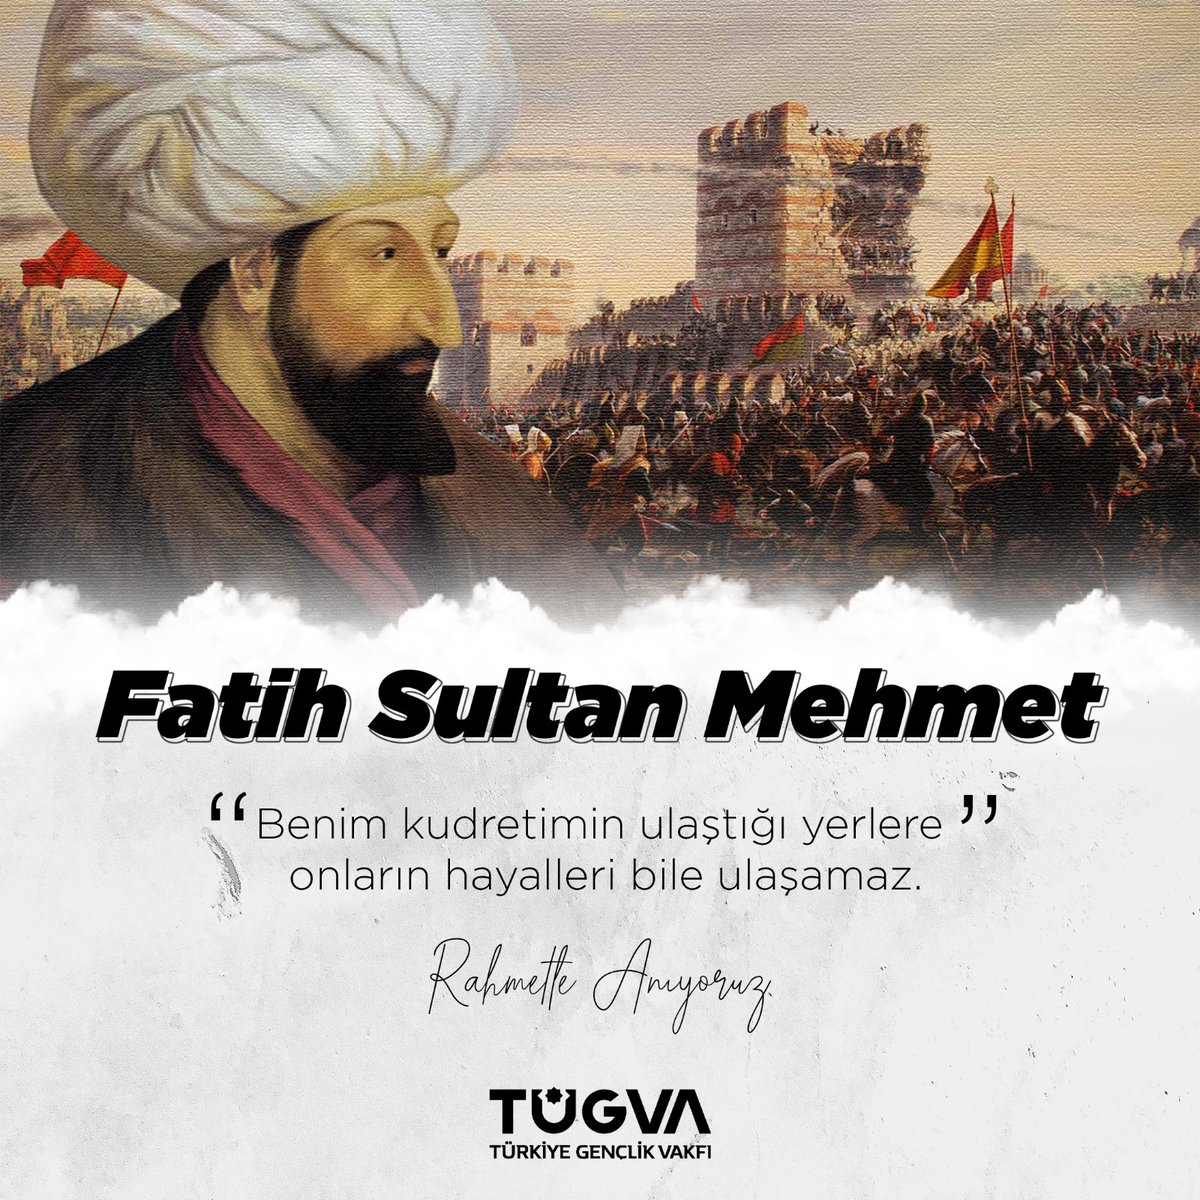 Kararlılığı ve vizyonuyla dünya tarihini değiştiren, çağ açıp çağ kapatan fetihler sultanı... Vefatının sene-i devriyesinde Fatih Sultan Mehmet Han'ı rahmetle yad ediyoruz. #FatihSultanMehmet